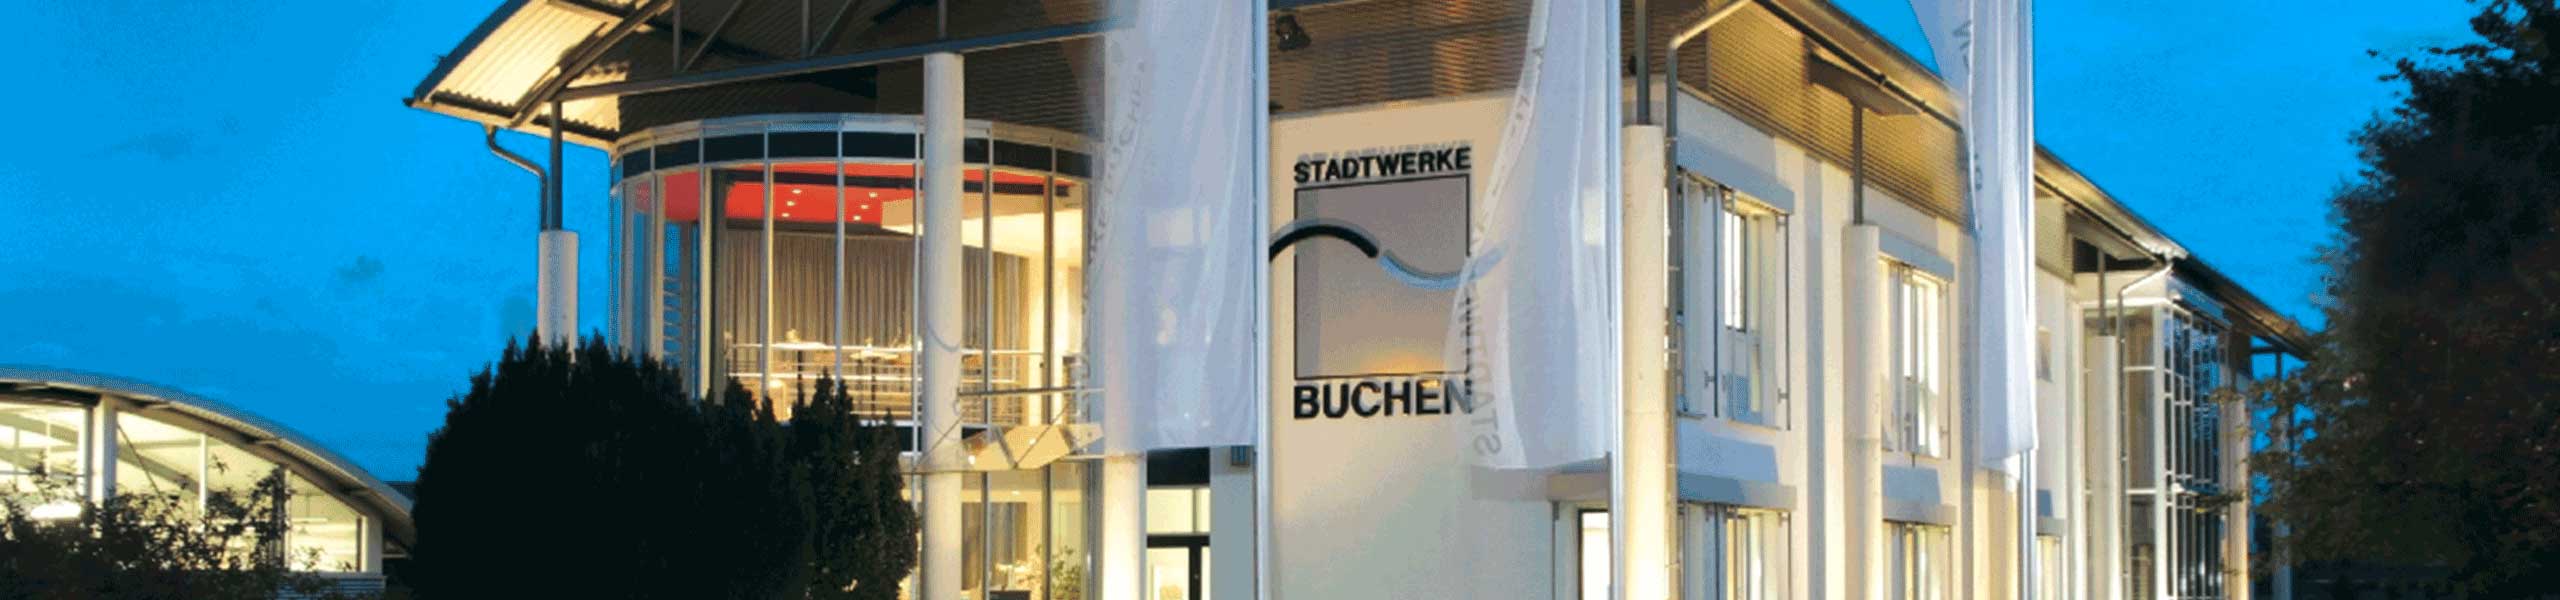 Stadtwerke Buchen GmbH & Co KG - Jahresablesung